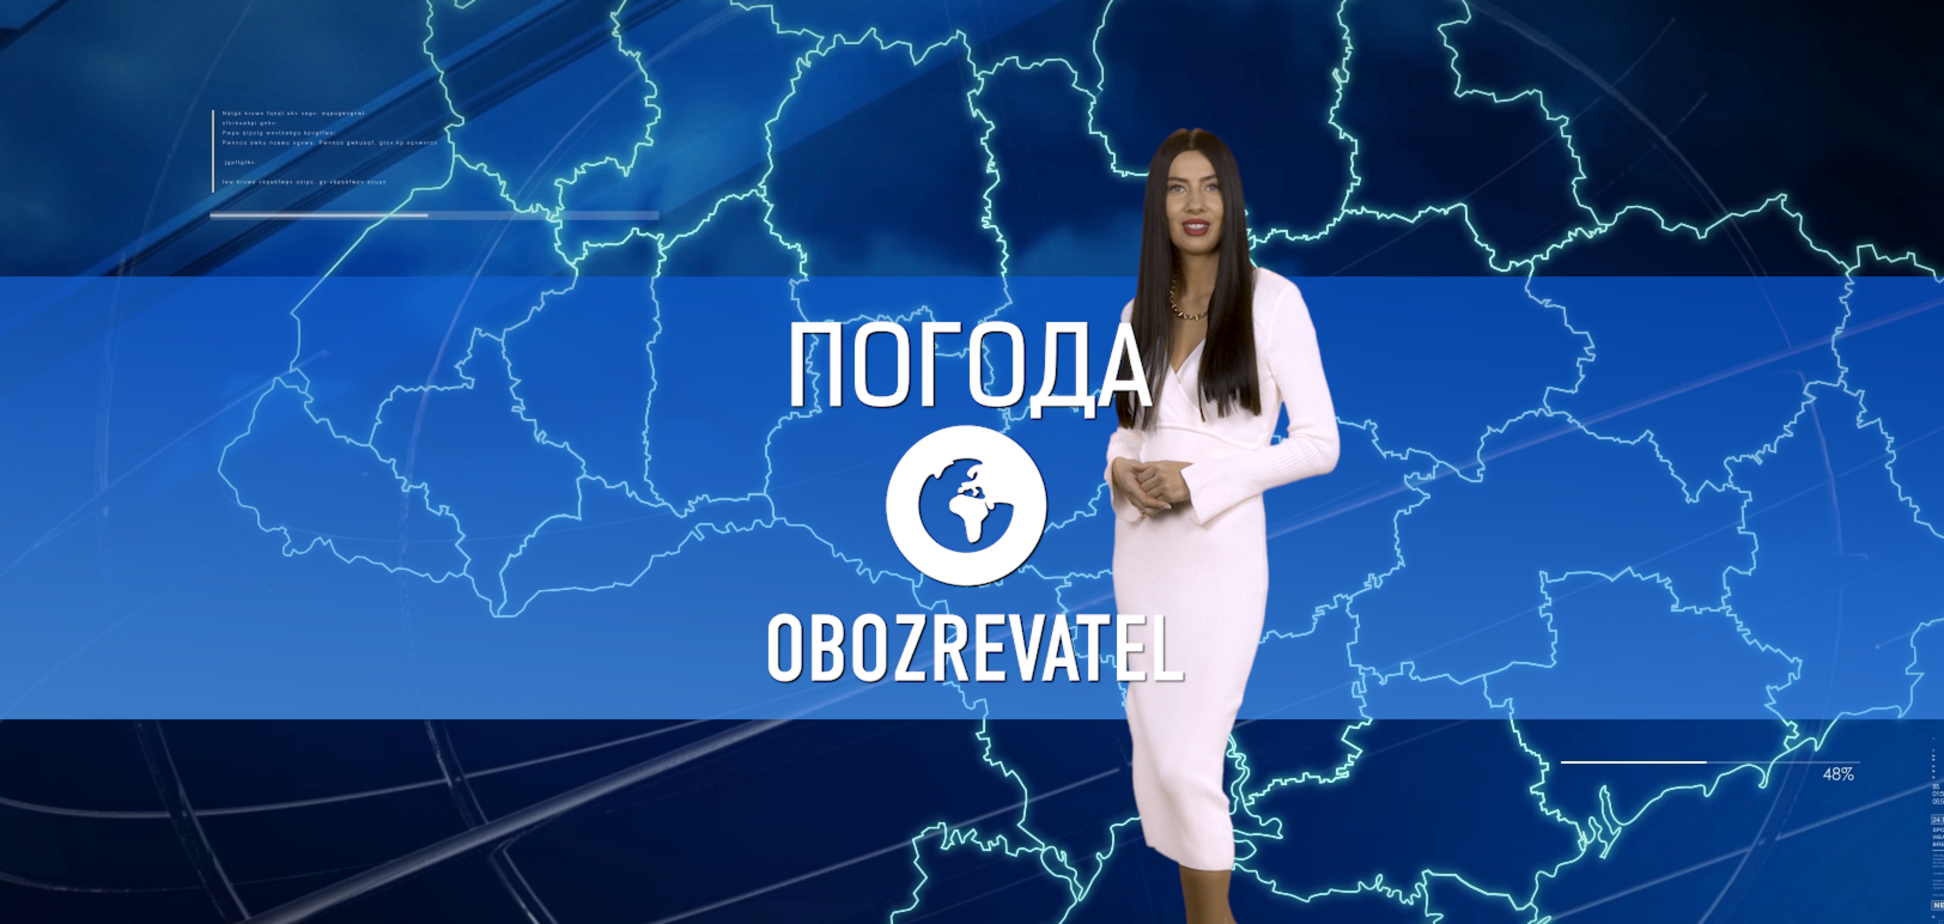 Прогноз погоды в Украине на субботу, 25 декабря, с Алисой Мярковской